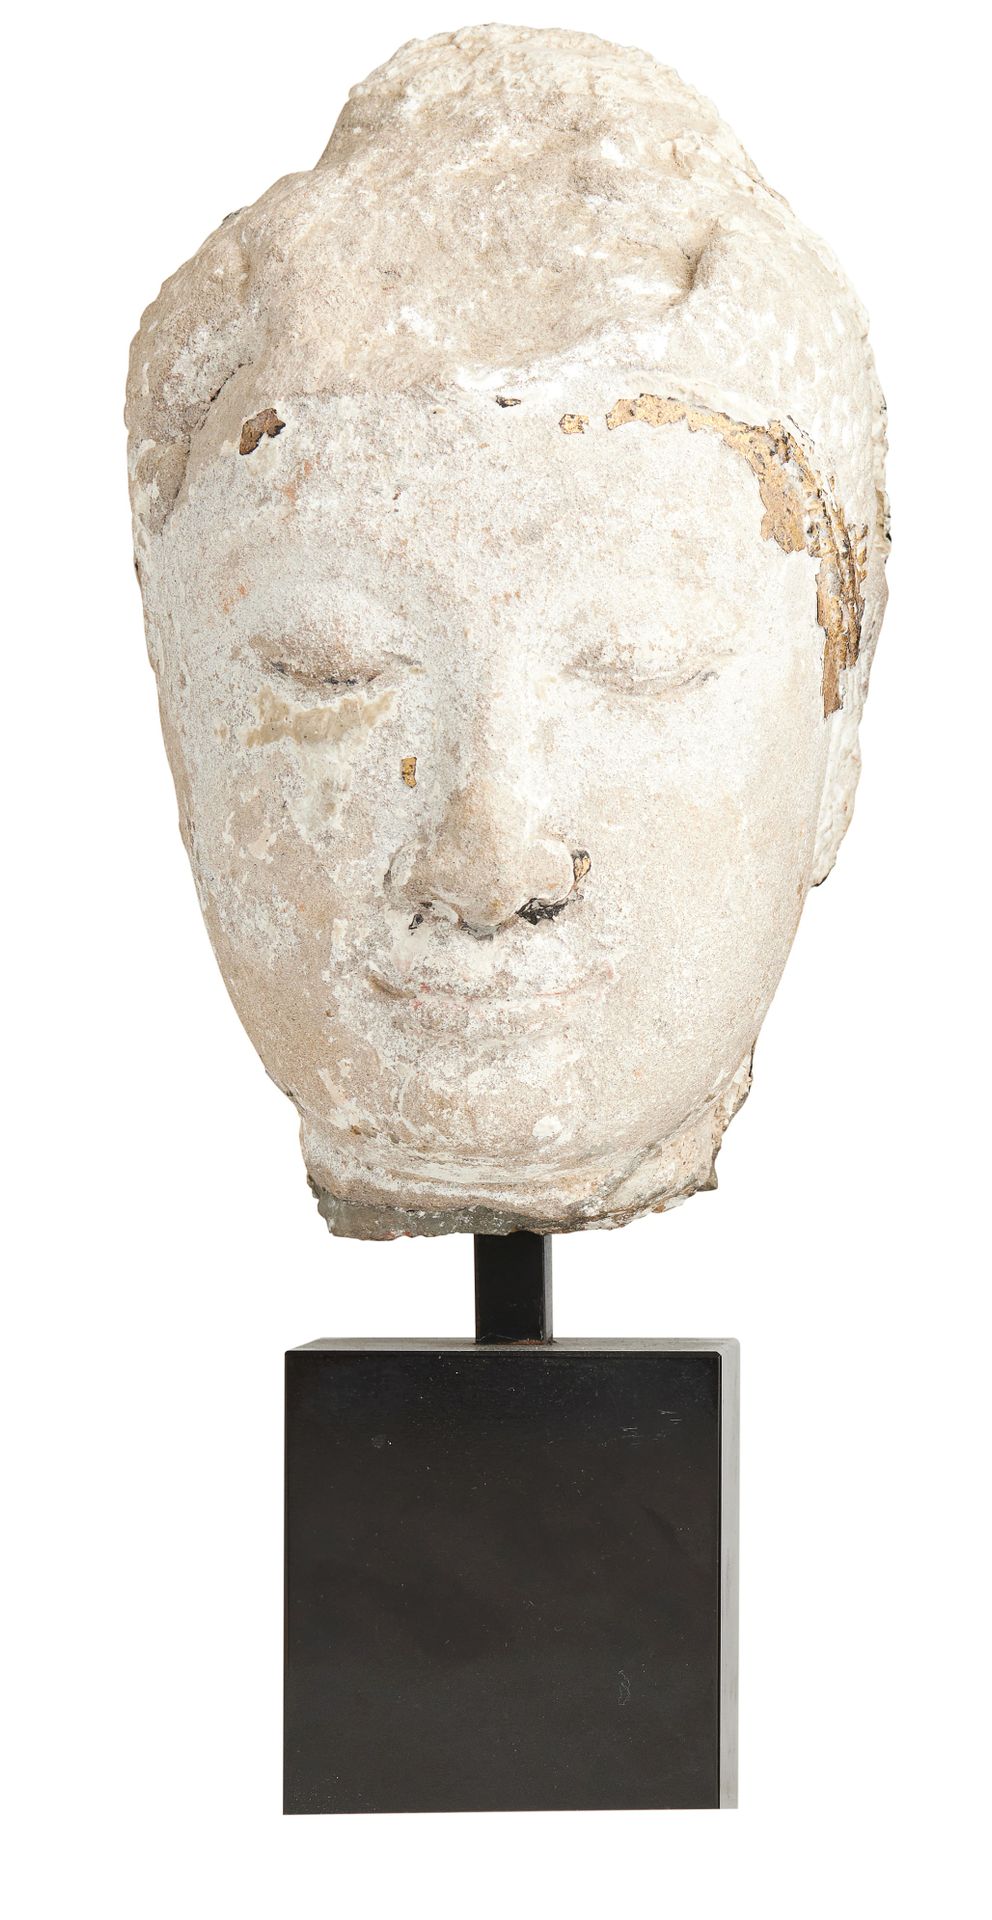 Null 菩萨头
米色砂岩，以前是涂漆的。
半闭着眼睛的脸，露出一丝微笑，表达了
安宁
暹罗，大城府，16-17世纪
高度：21厘米